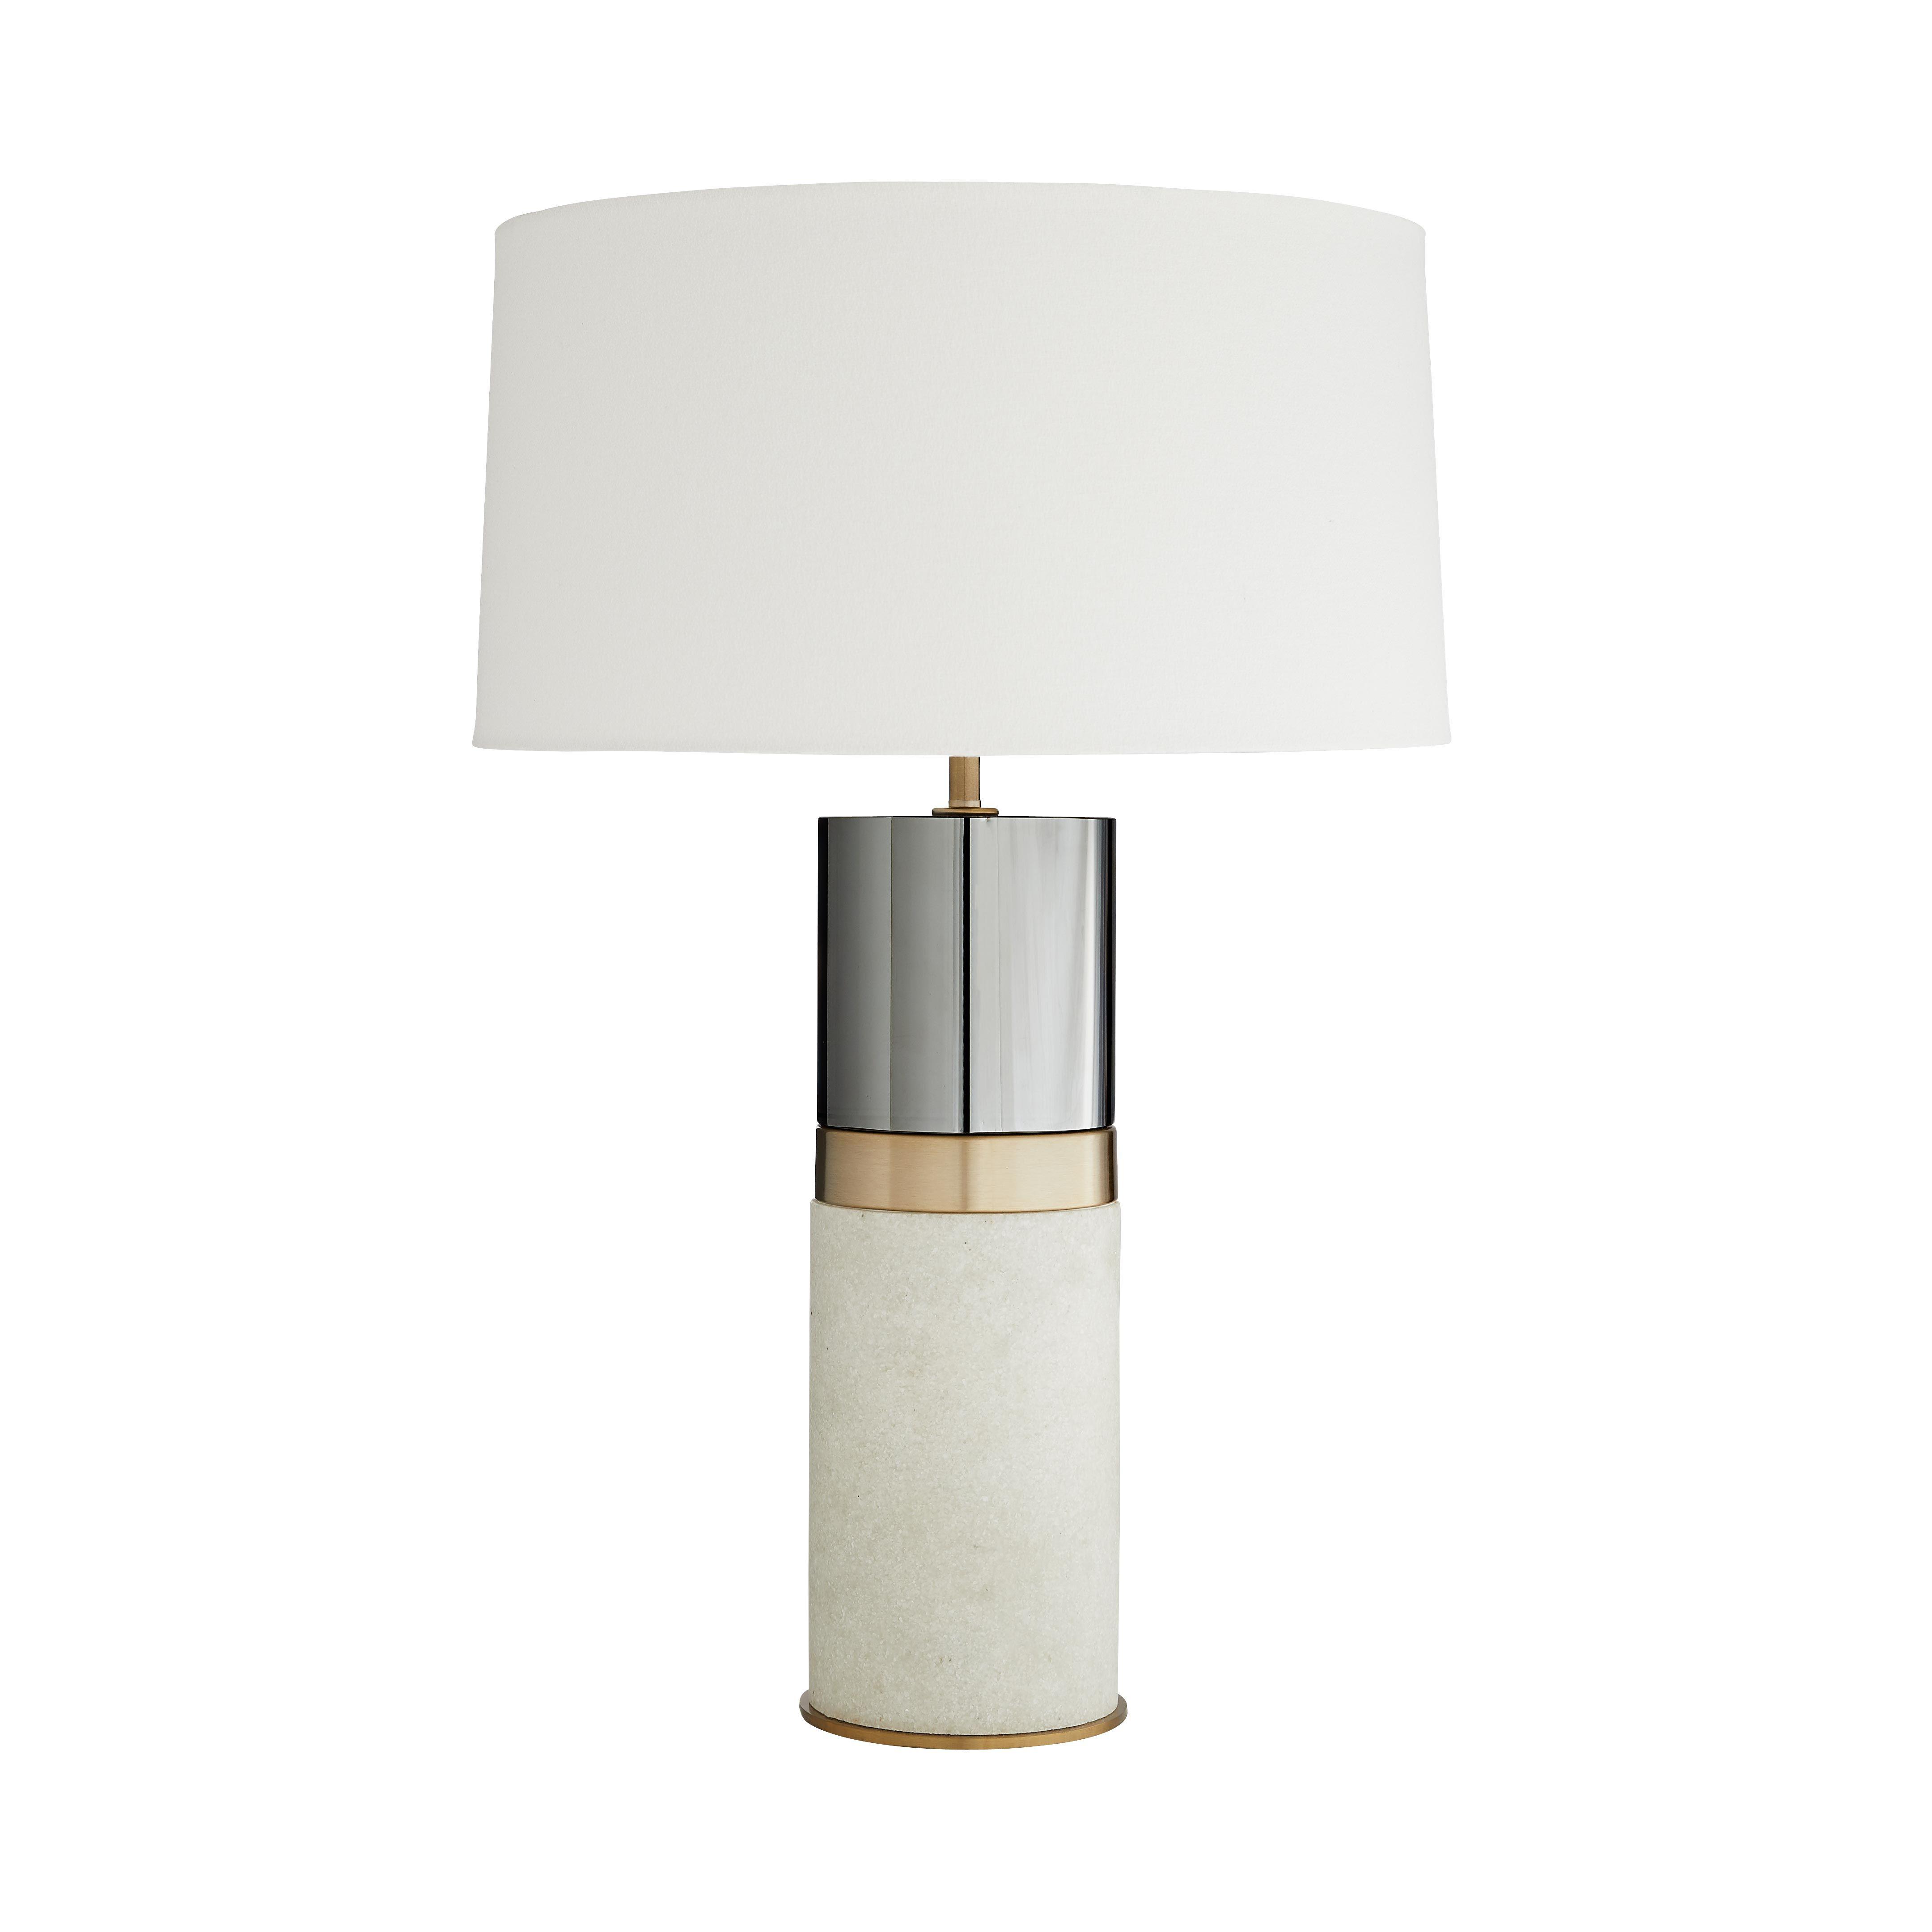 Купить Настольная лампа Whitman Lamp в интернет-магазине roooms.ru